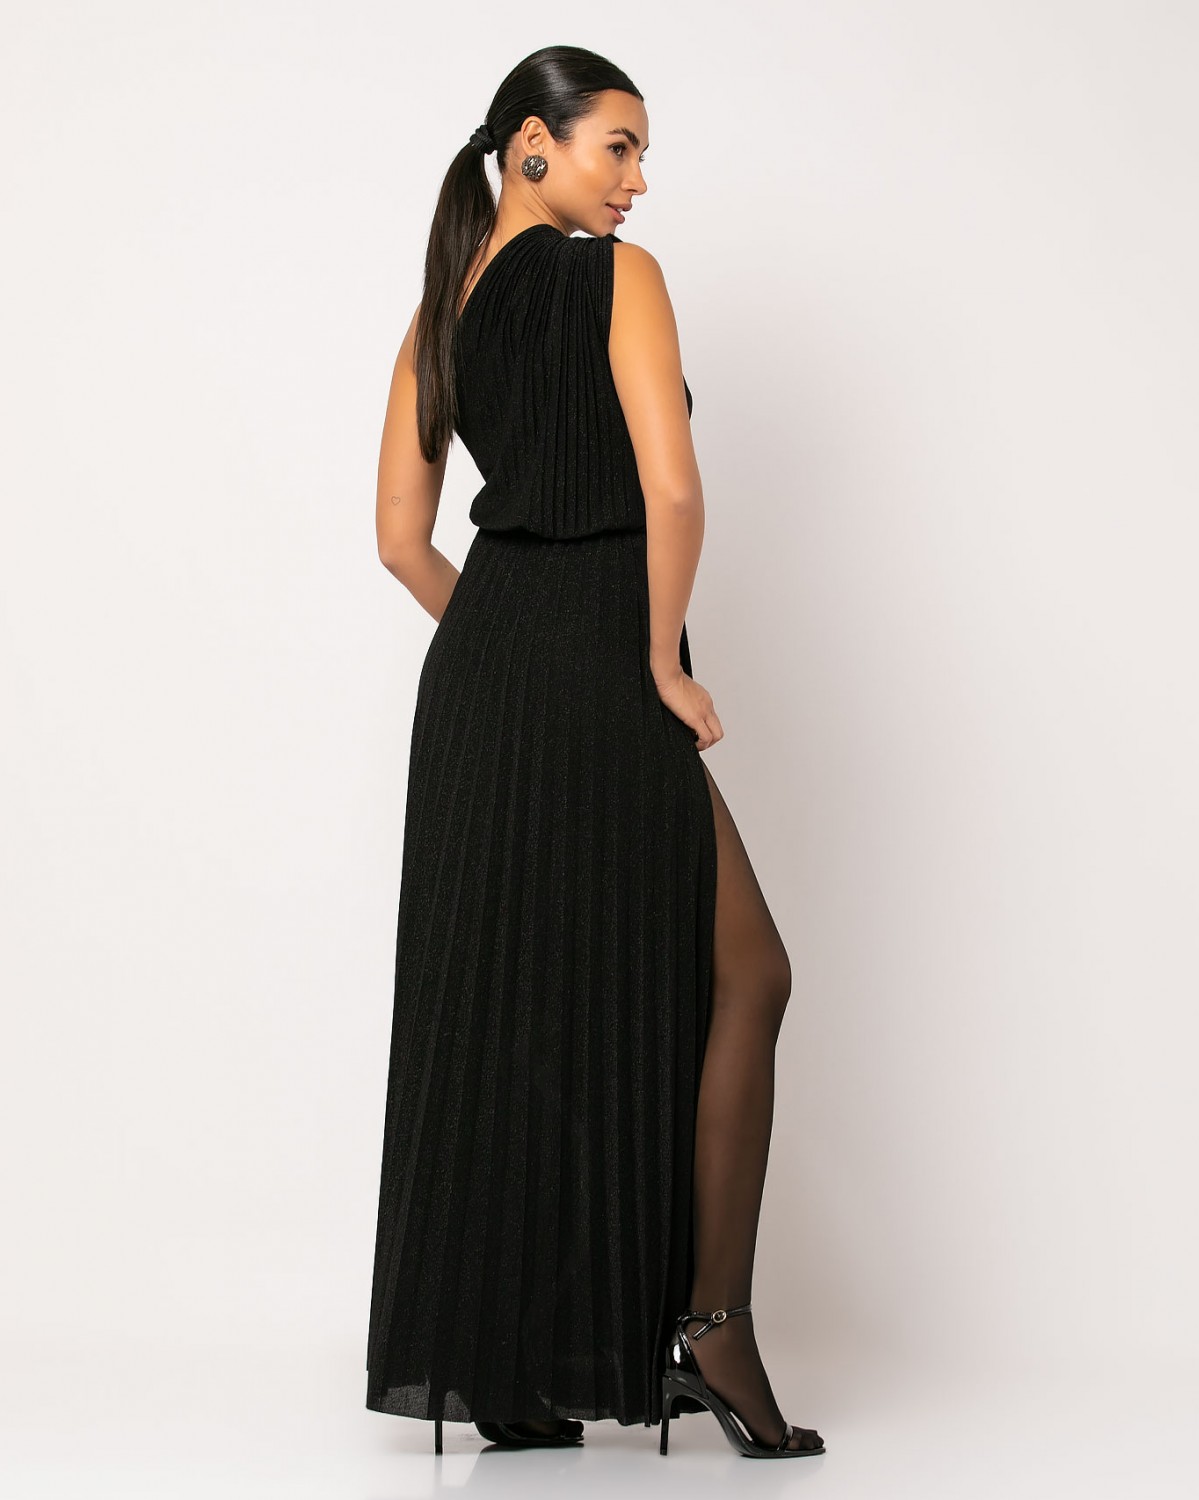 Φόρεμα maxi με έναν ώμο και άνοιγμα στο πλάι Μαύρο 